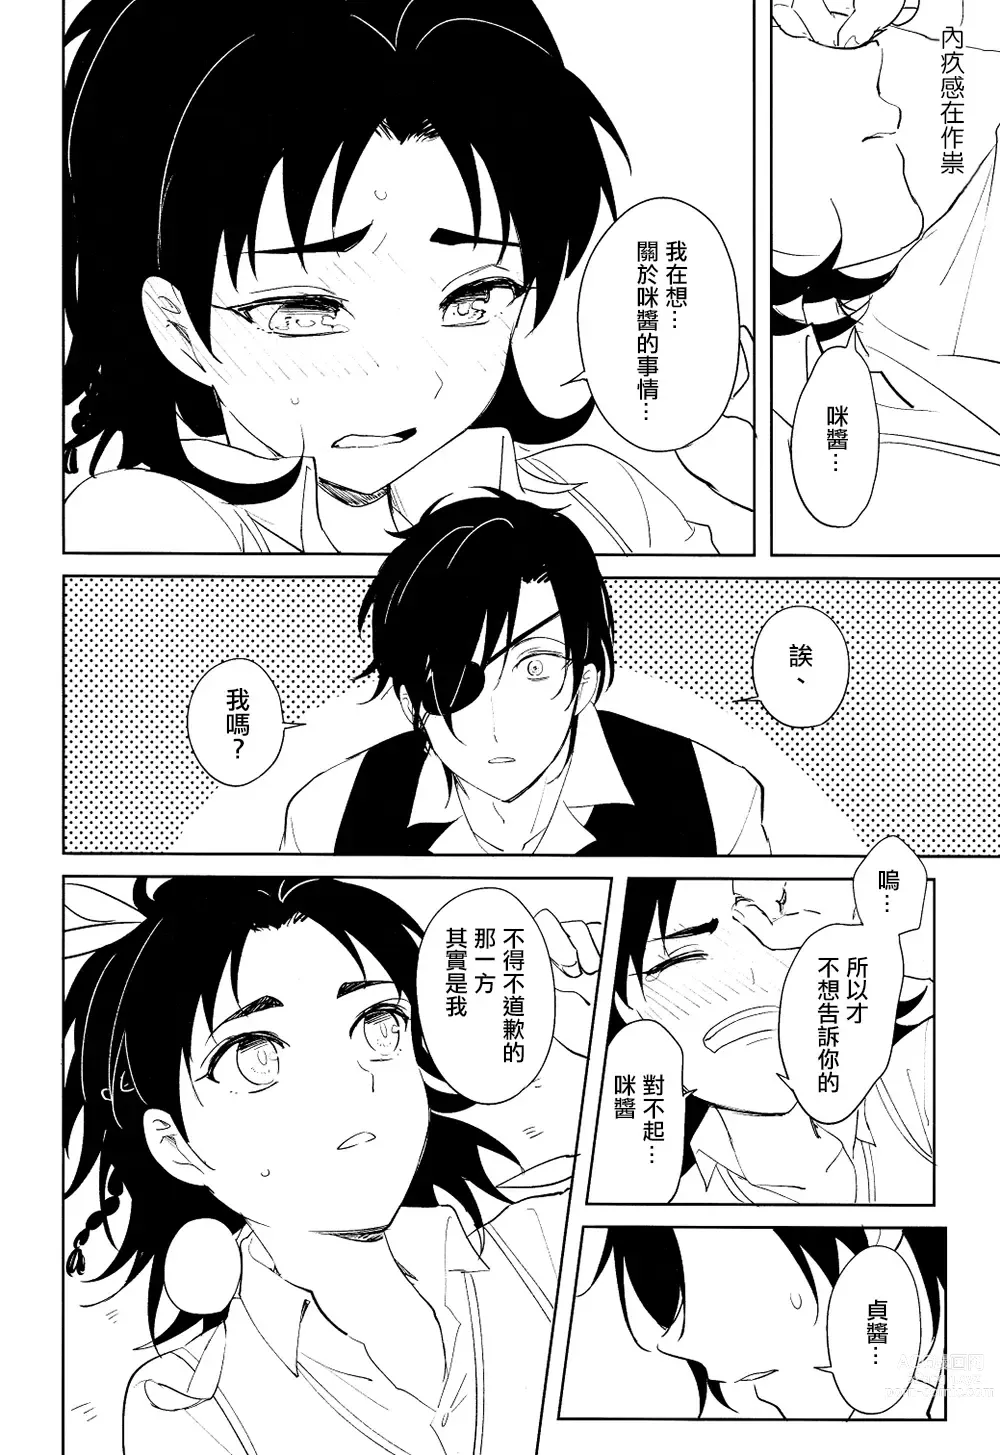 Page 13 of doujinshi 从一个人变成两个人